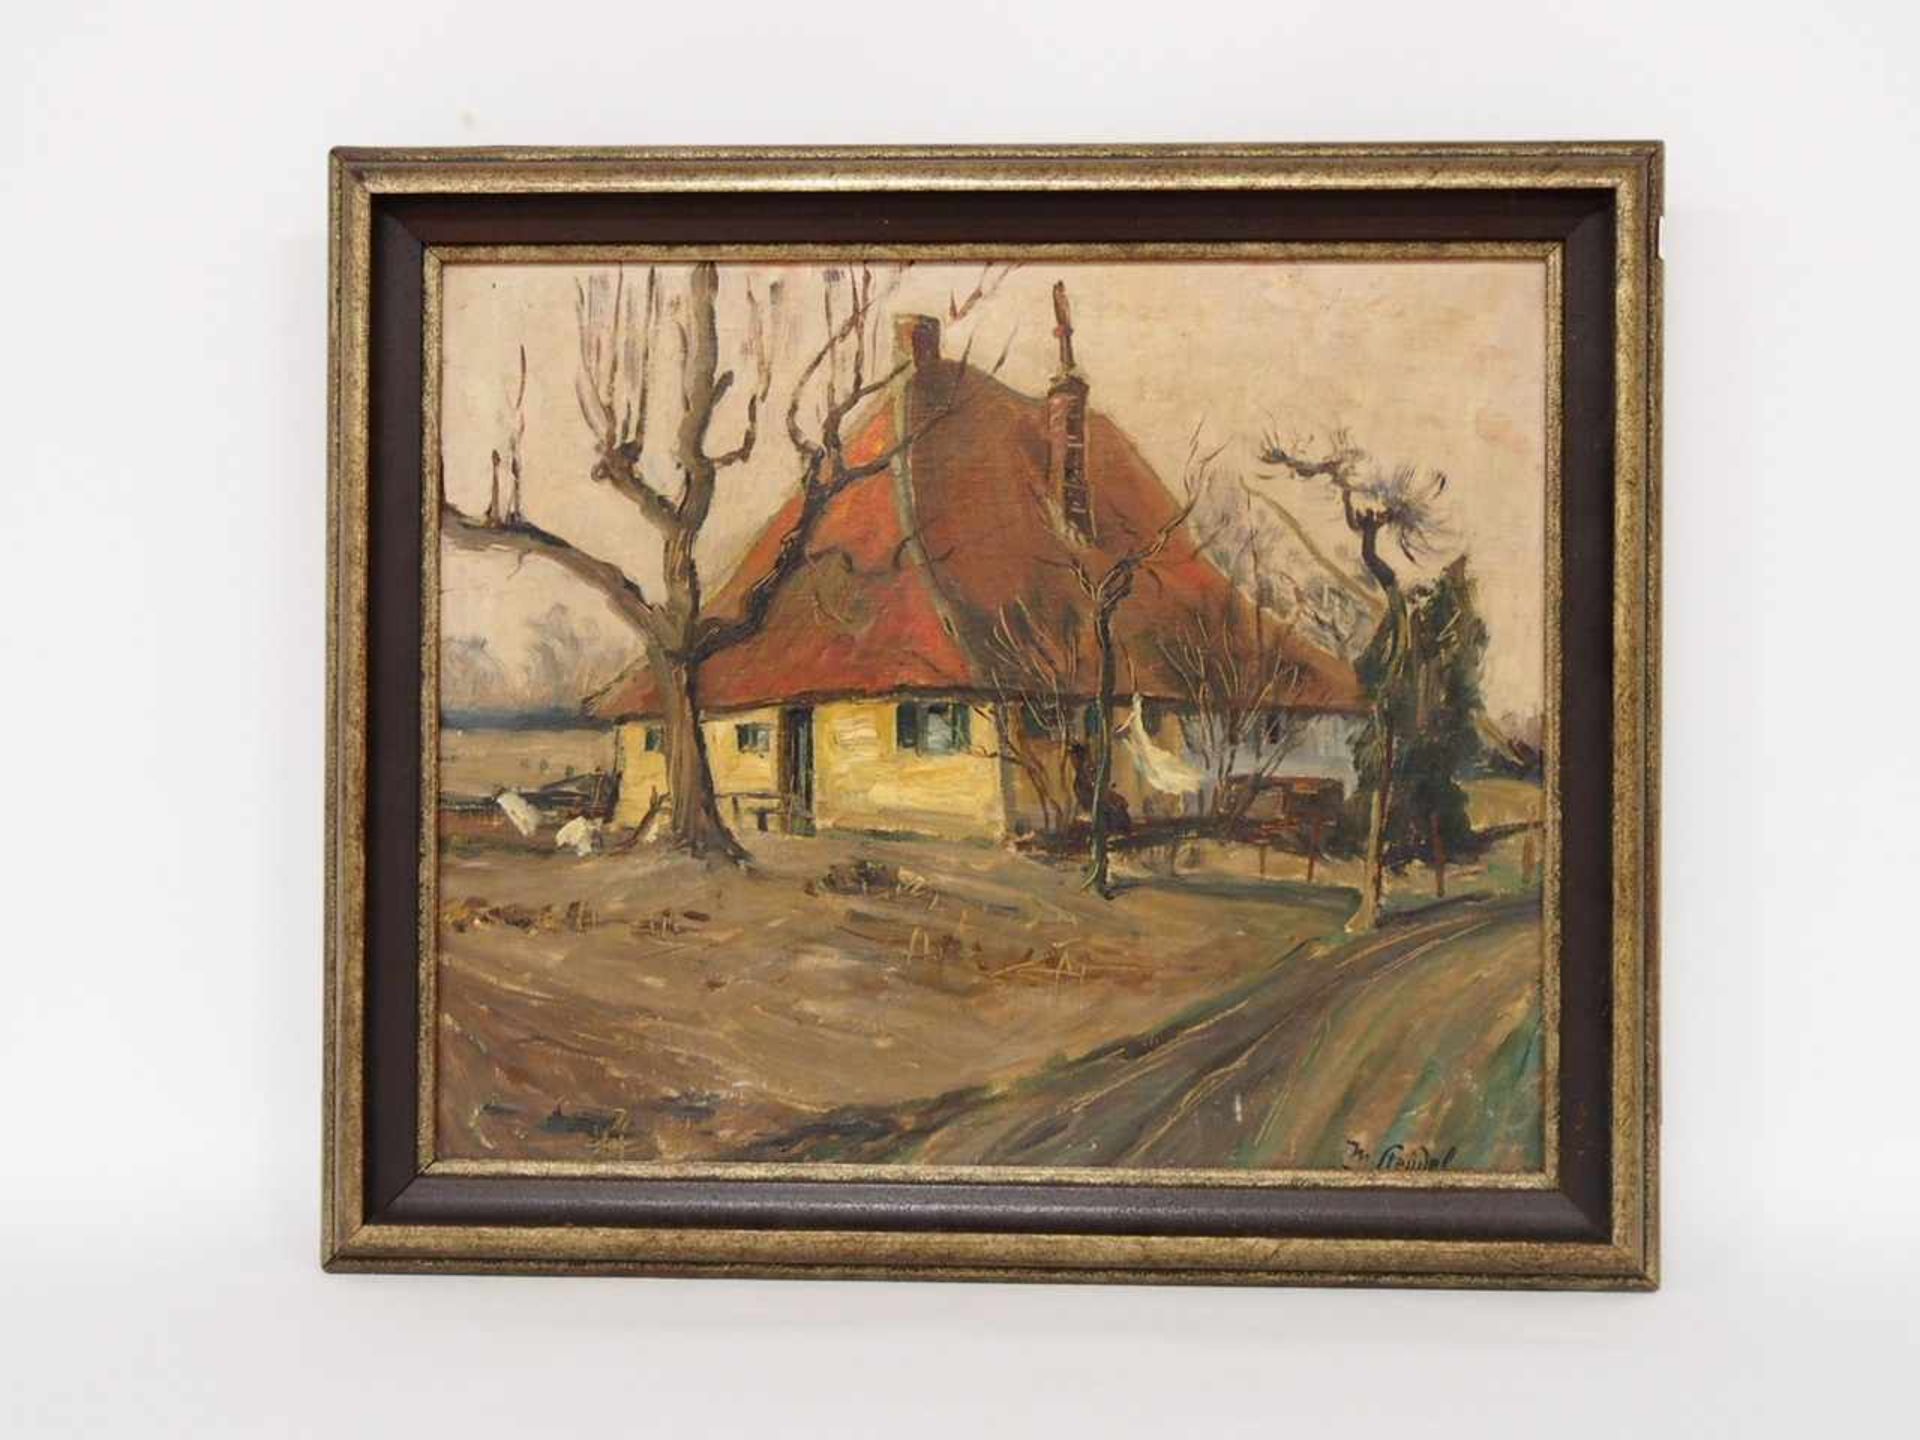 STEUDEL, Max1873 - 1932Rheinischer BauernhofÖl auf Leinwand, signiert unten rechts, 40 x 50 cm, - Image 2 of 2